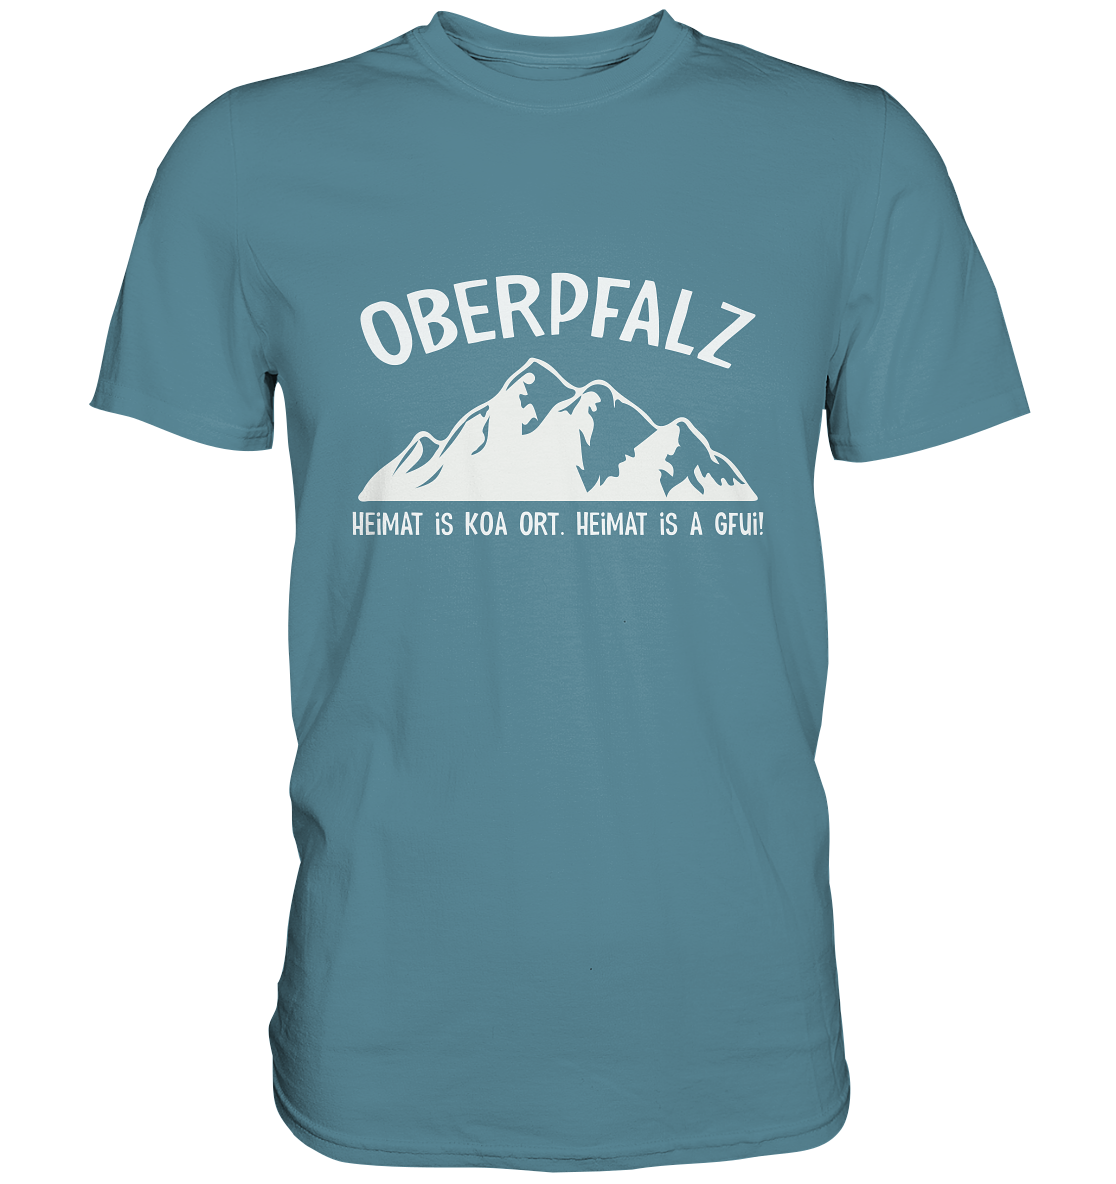 Oberpfalz. Heimat is koa Ort. Heimat is a Gfui. - Premium Shirt